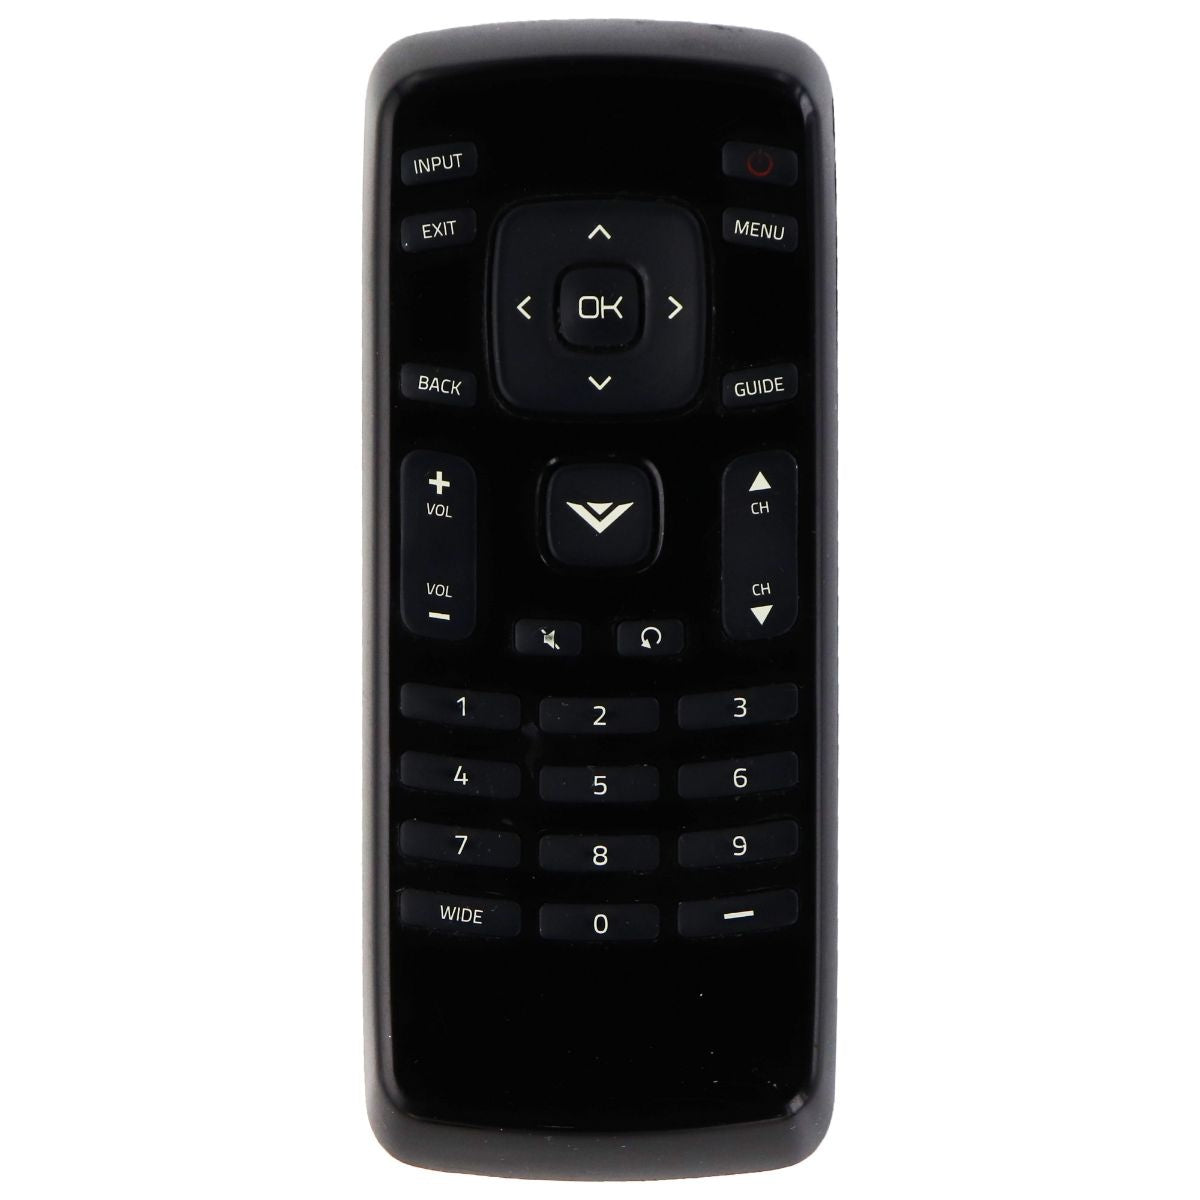 Vizio Remote Control (XRT020) for Select Vizio TVs - Black TV, Video & Audio Accessories - Remote Controls Vizio    - Simple Cell Bulk Wholesale Pricing - USA Seller